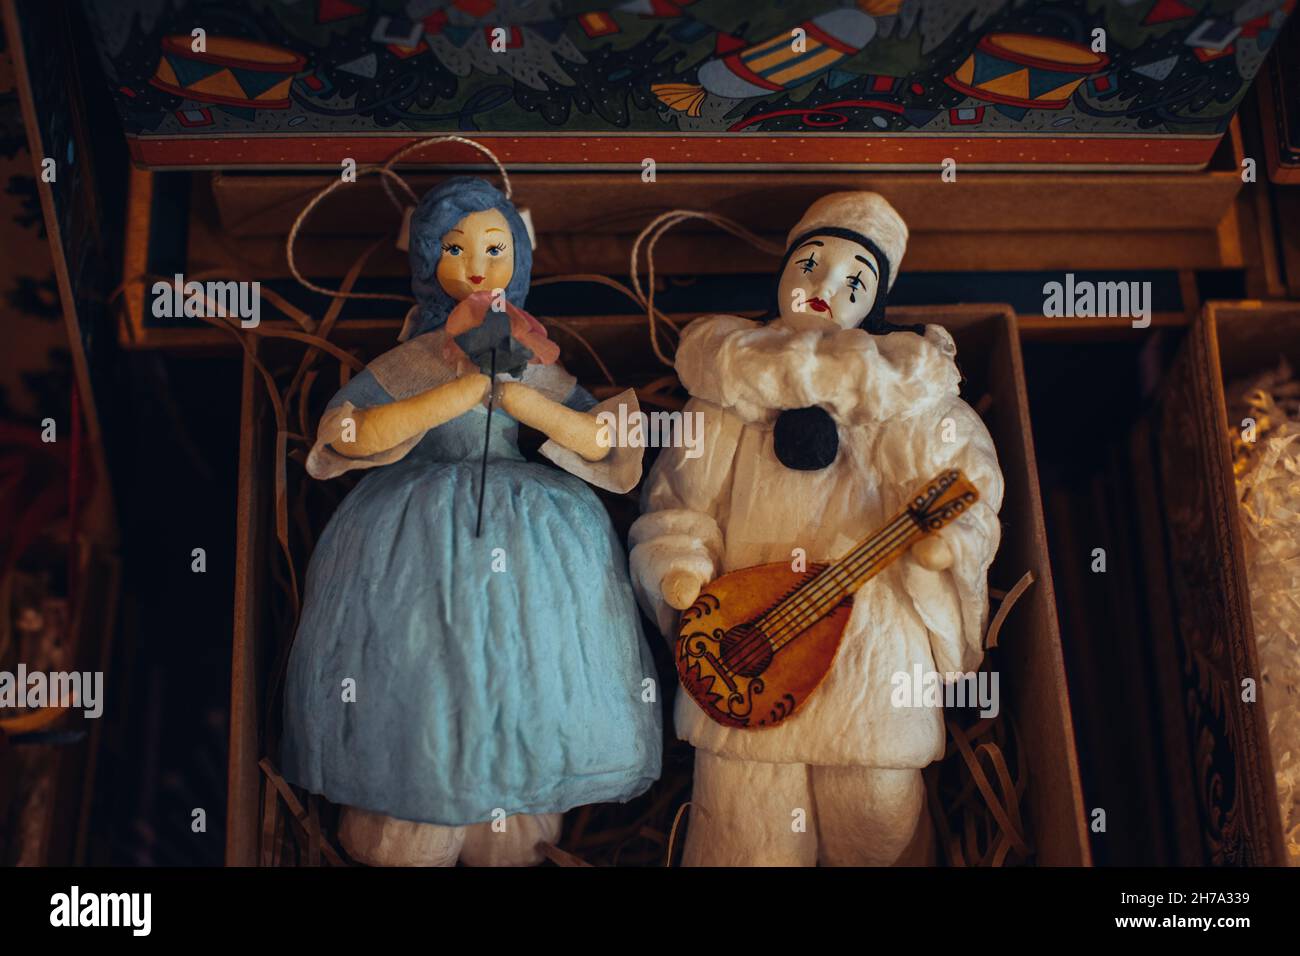 Figurines de jouets vintage de Malvina et Pierrot dans une boîte cadeau.Décoration et détails festifs.Poupées et souvenirs créatifs Banque D'Images